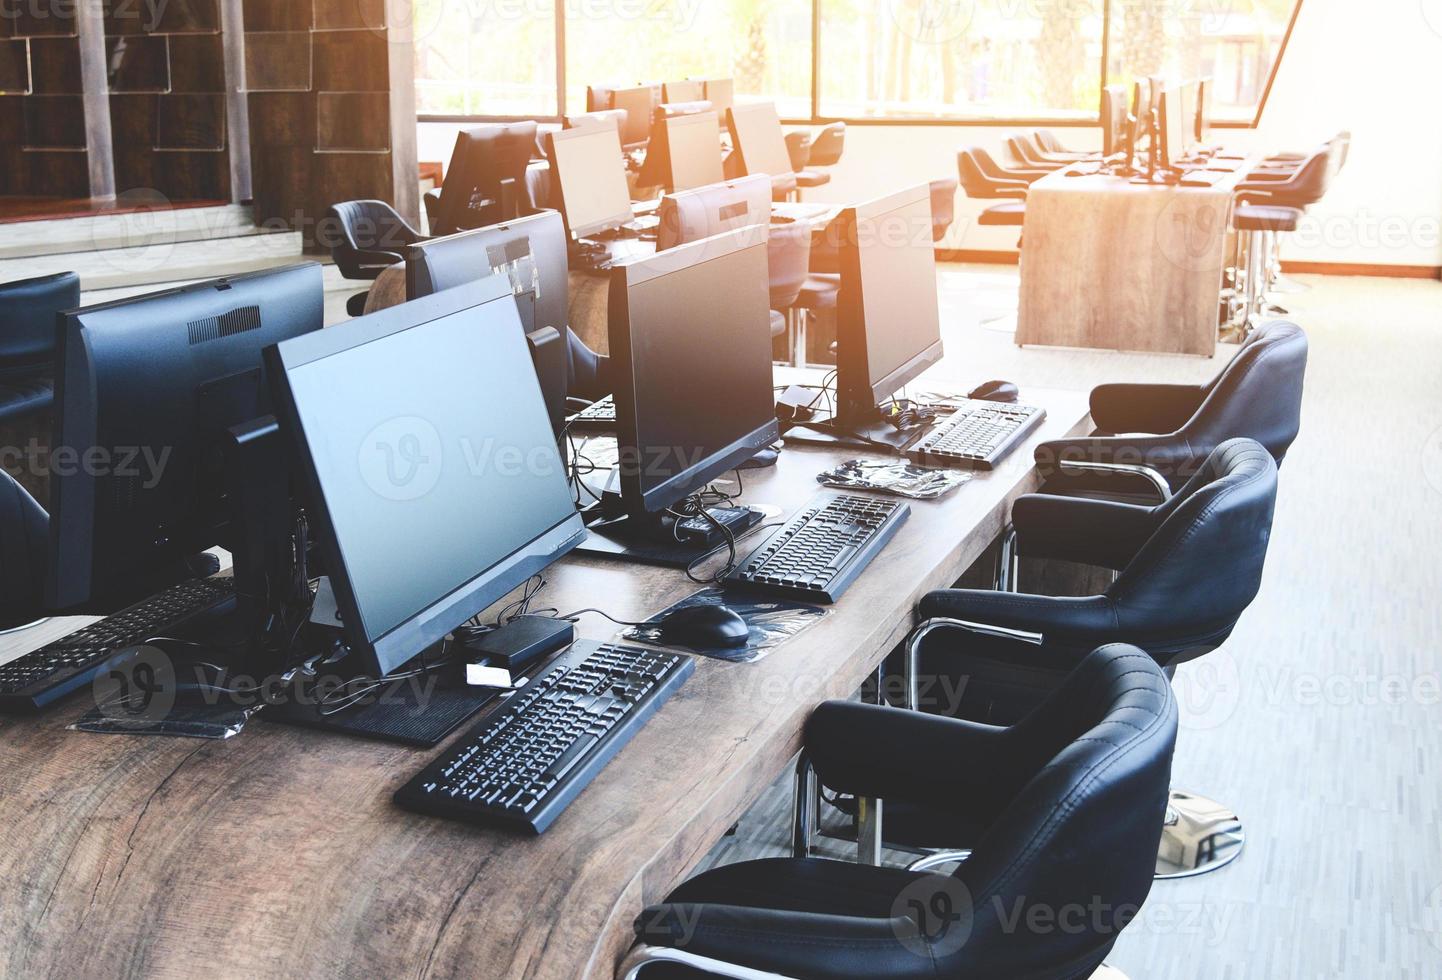 grupp av dator med bildskärm prydligt placerad i ett datorsal, datorrum på kontoret modernt med fönster foto